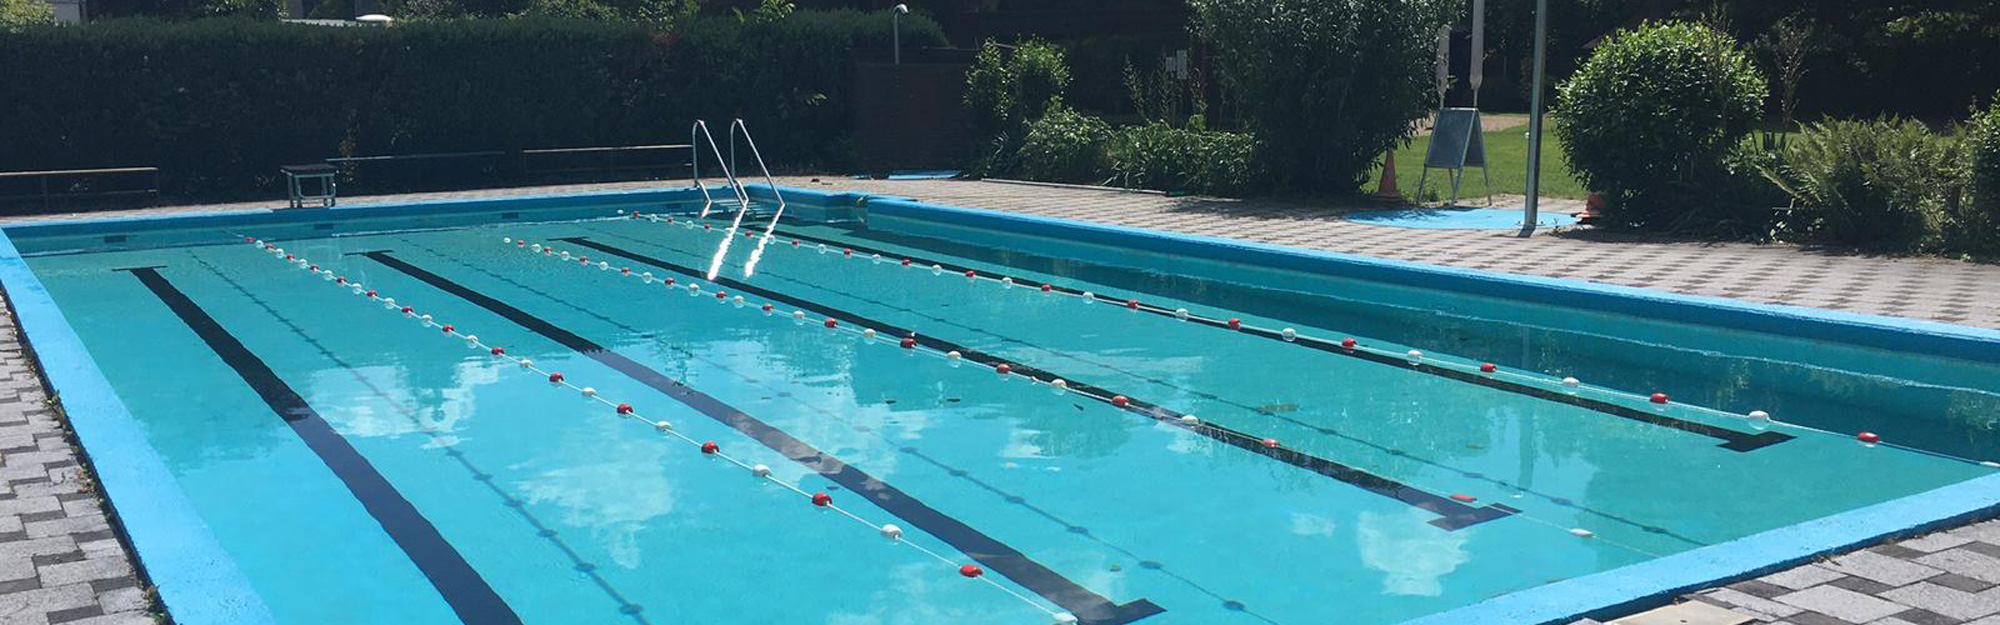 Wassersport Westend e.V. Frankfurt – Schwimmbad auf dem Vereinsgelände